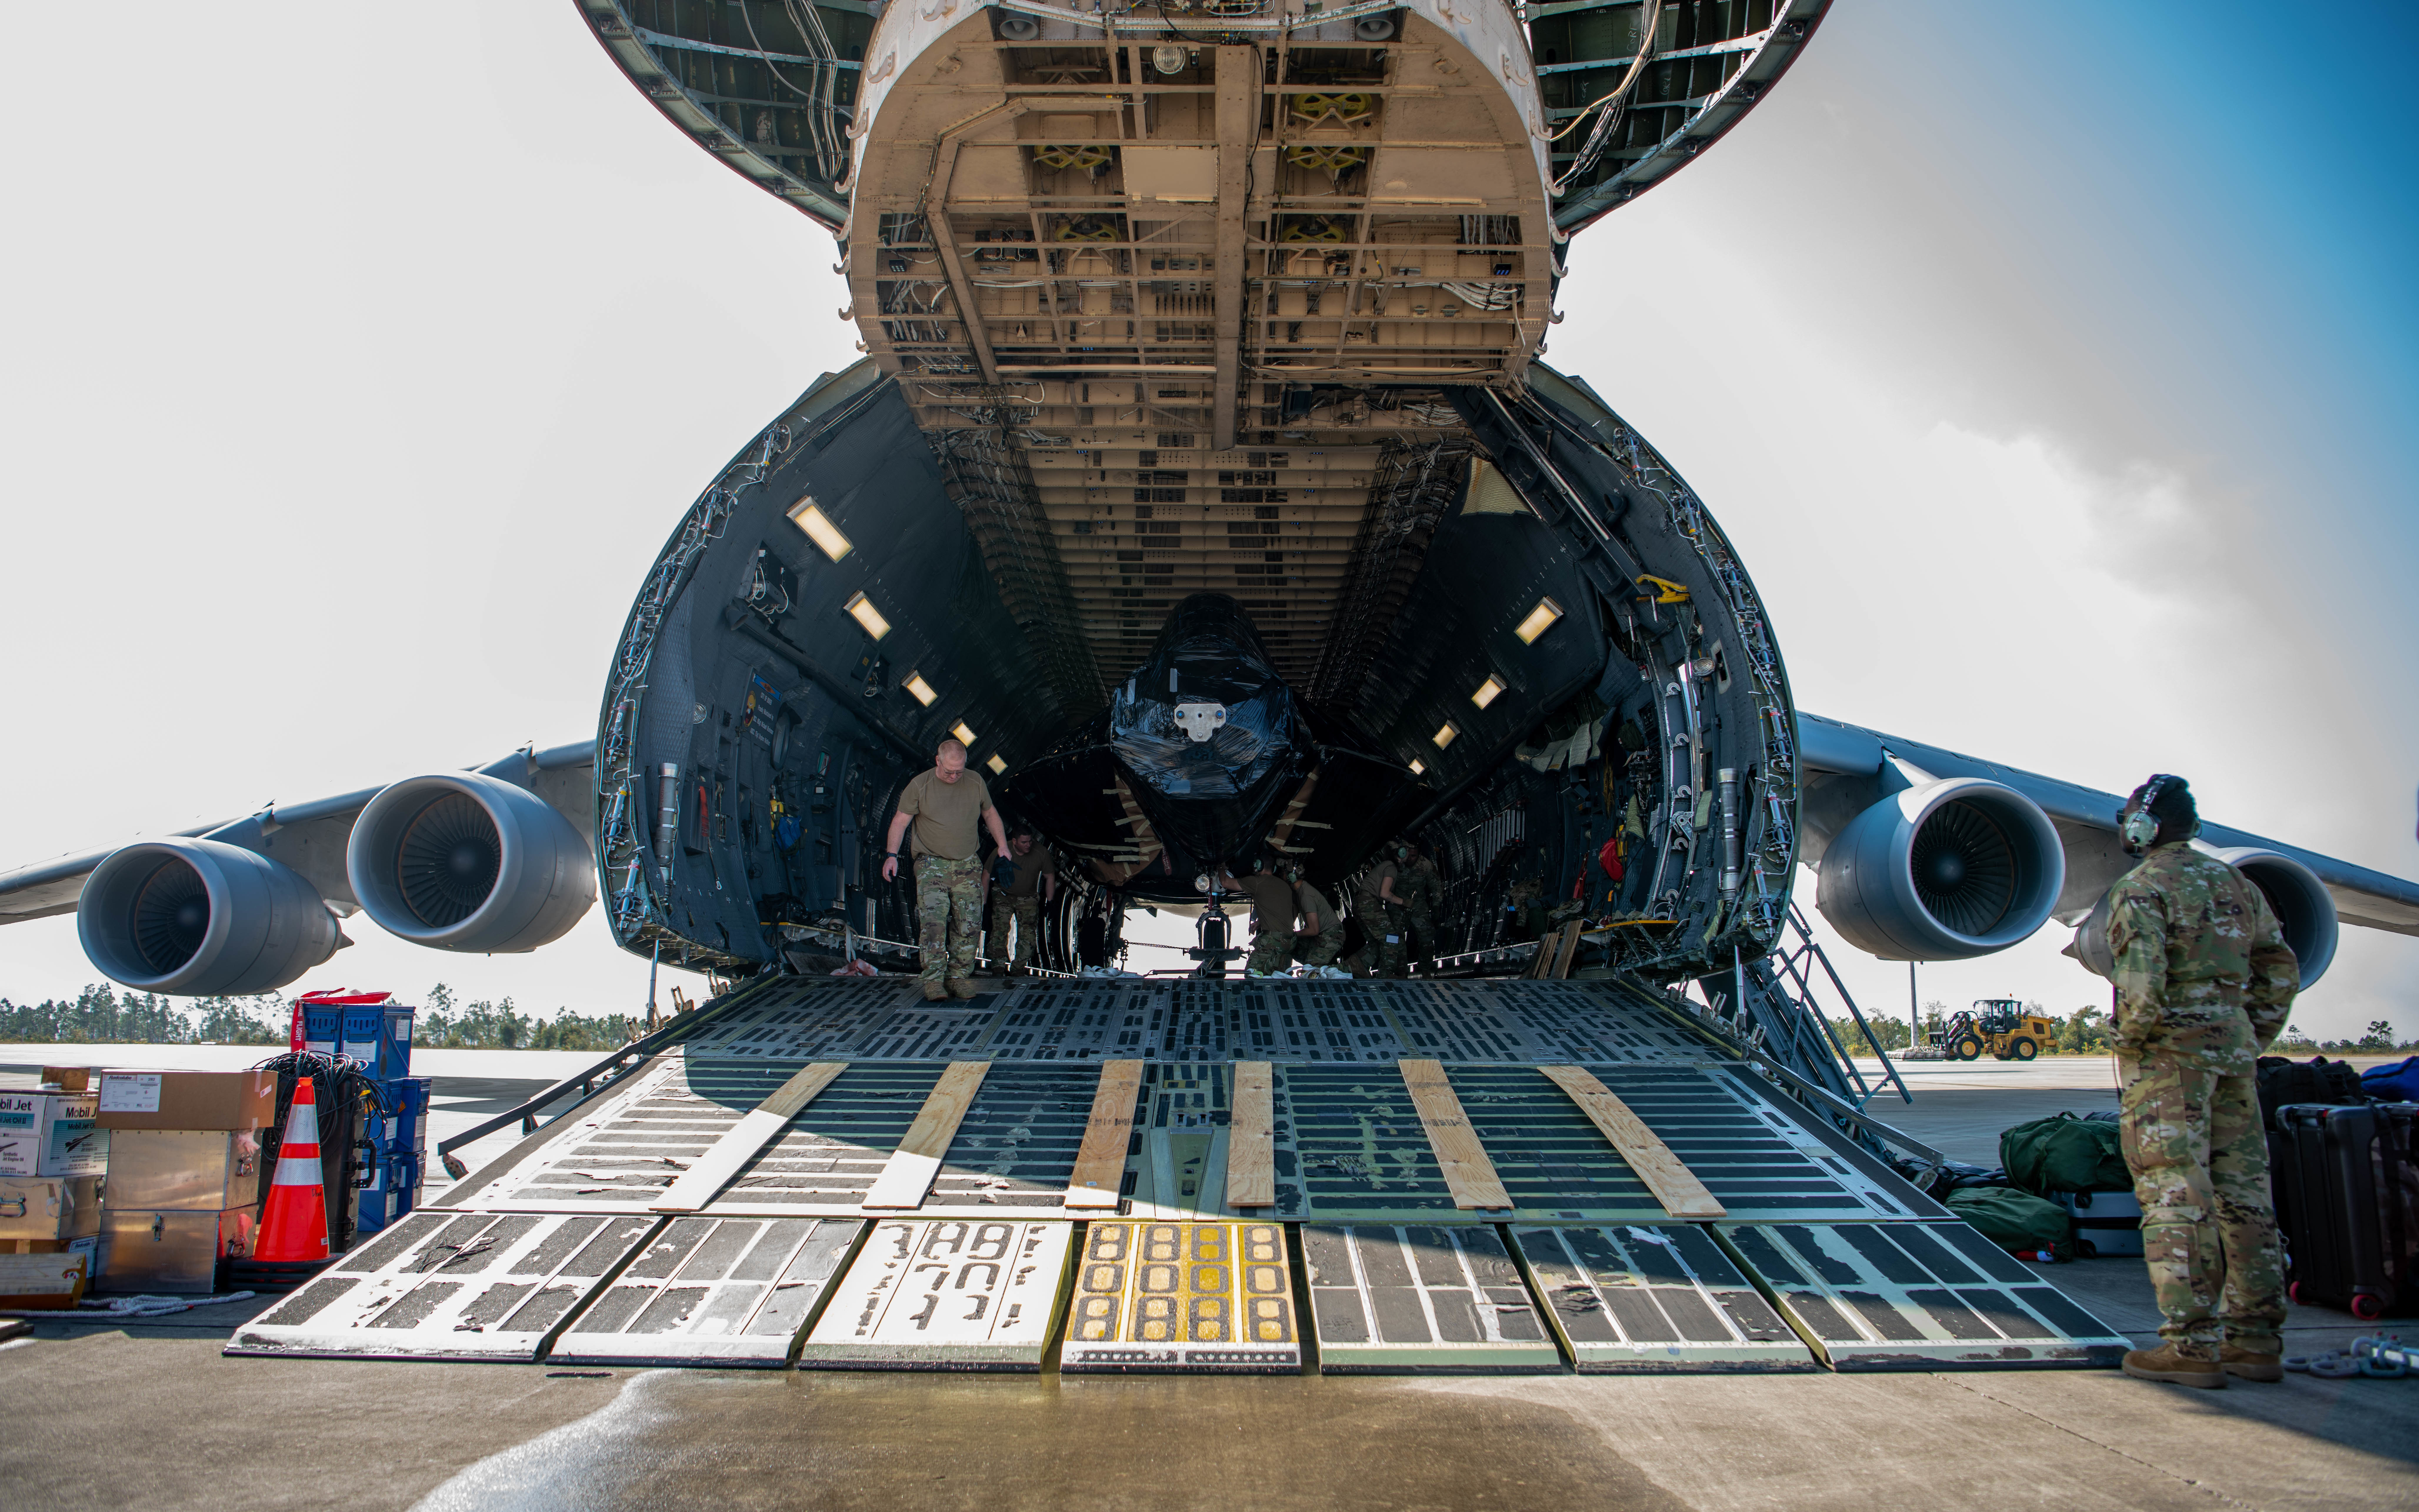 Porte-clés F-22 Raptor - Pilot's station airfield